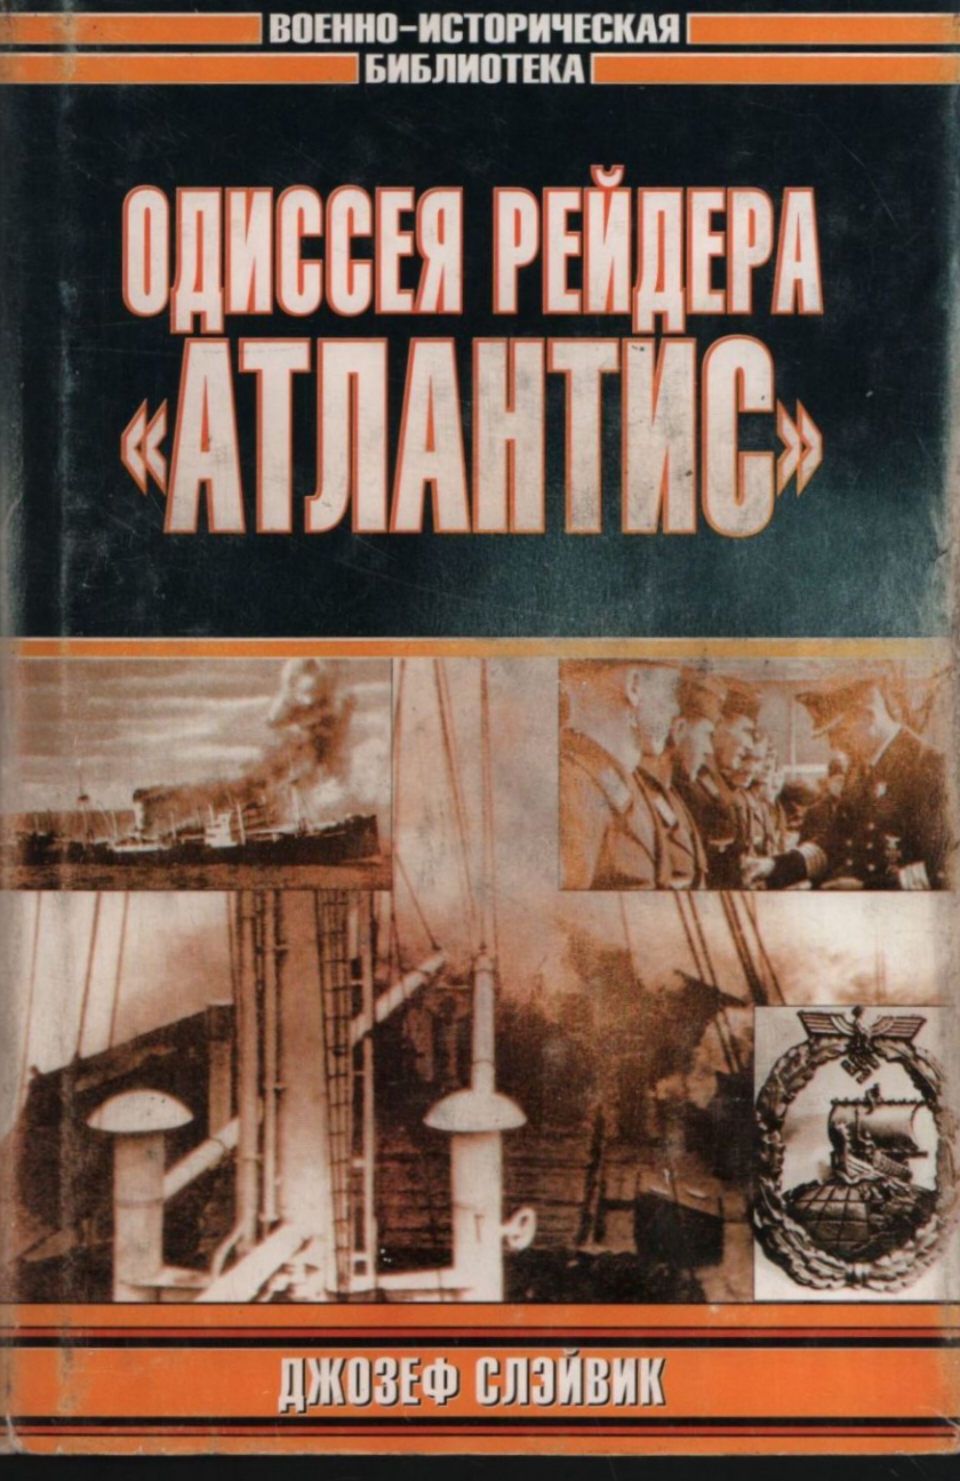 обложка книги Одиссея рейдера «Атлантис»